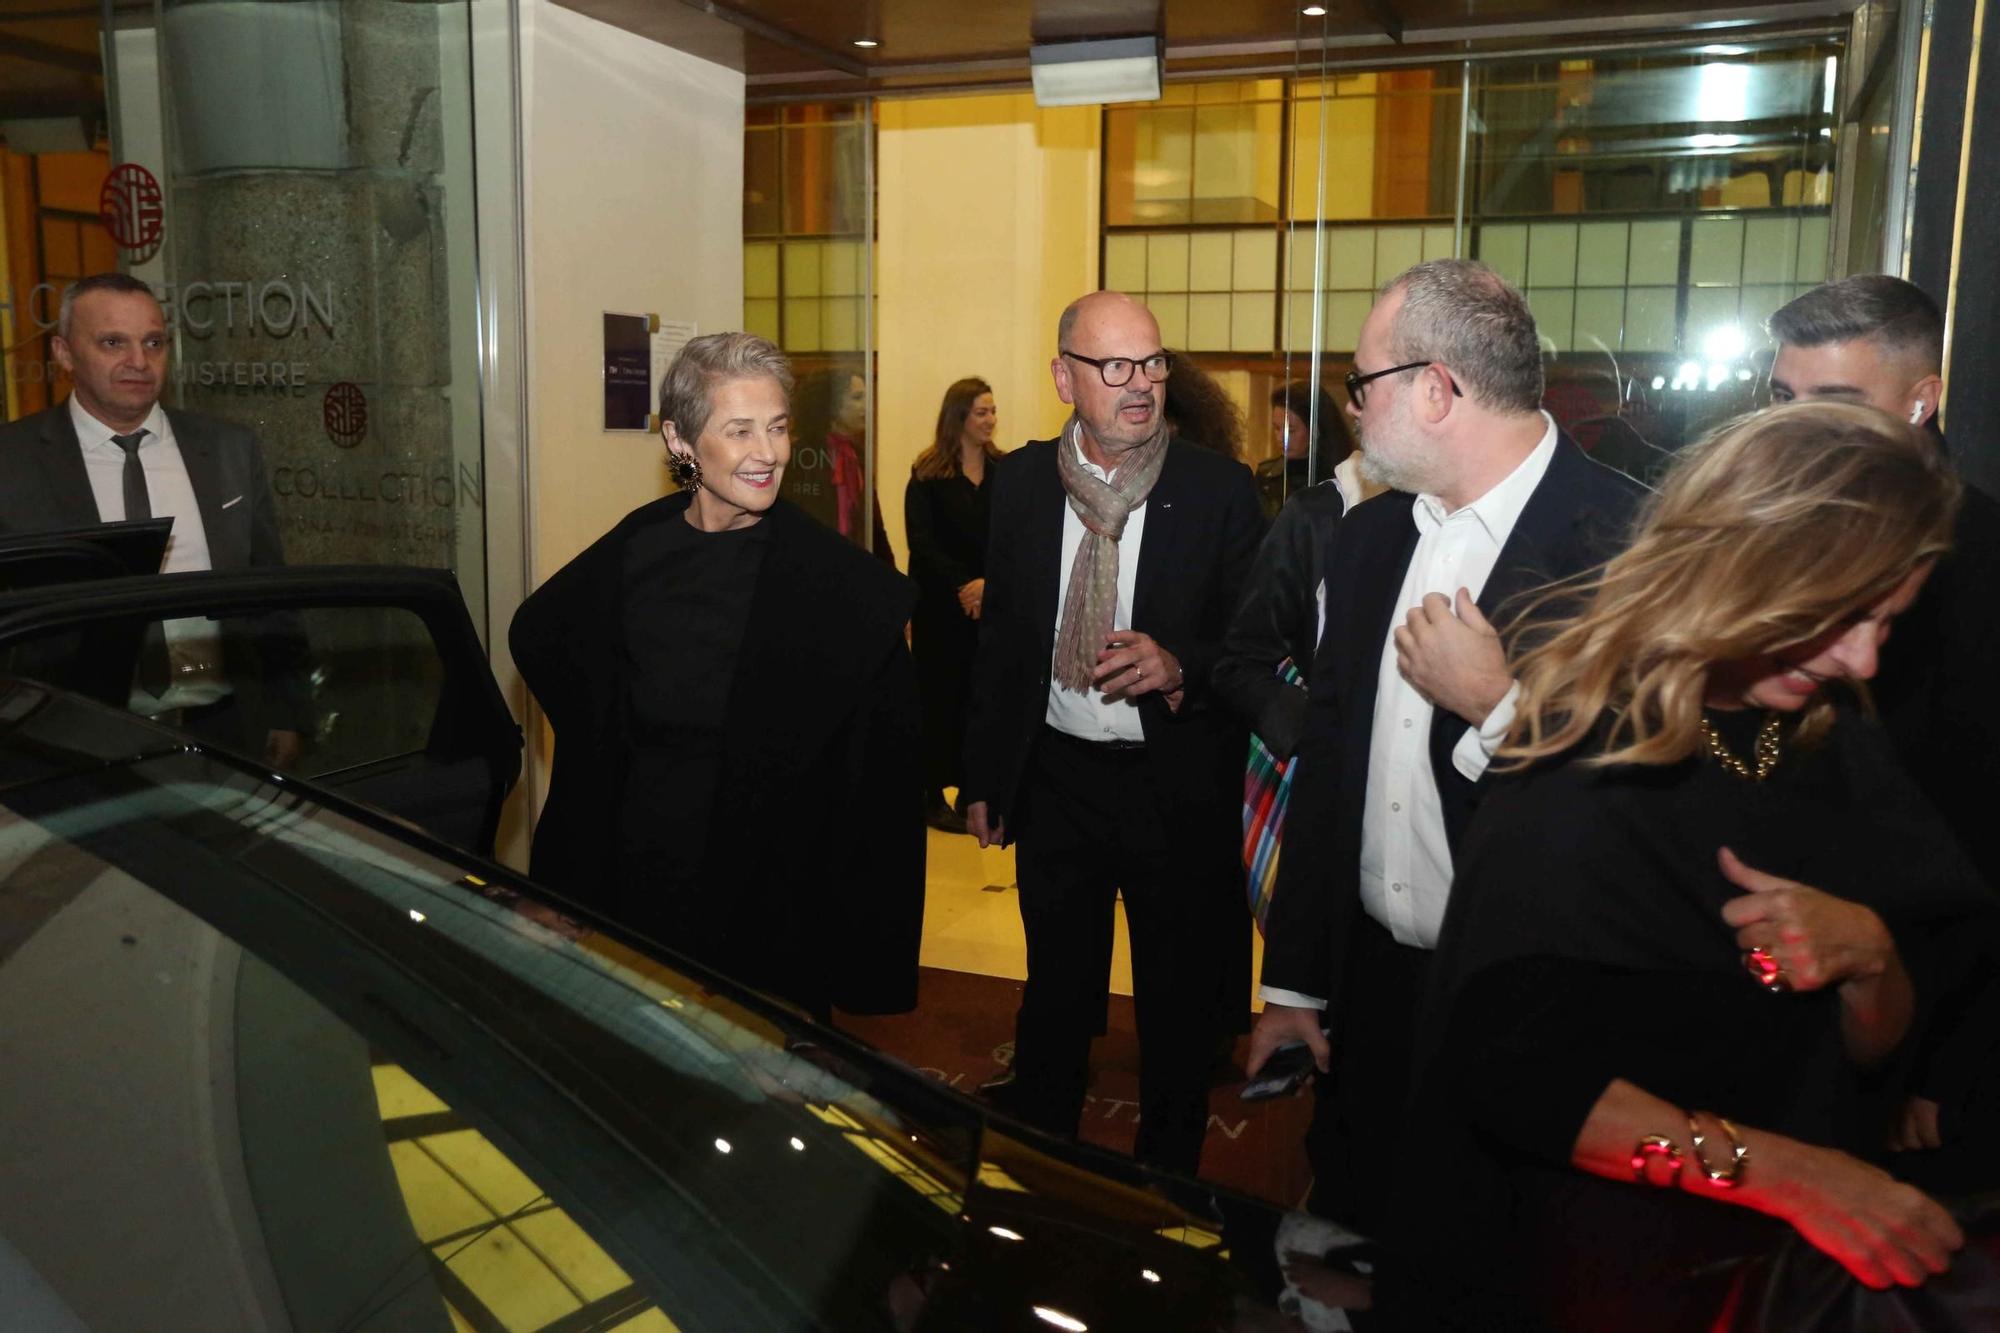 Los invitados a la fiesta de Marta Ortega para inaugurar la exposición de Helmut Newton